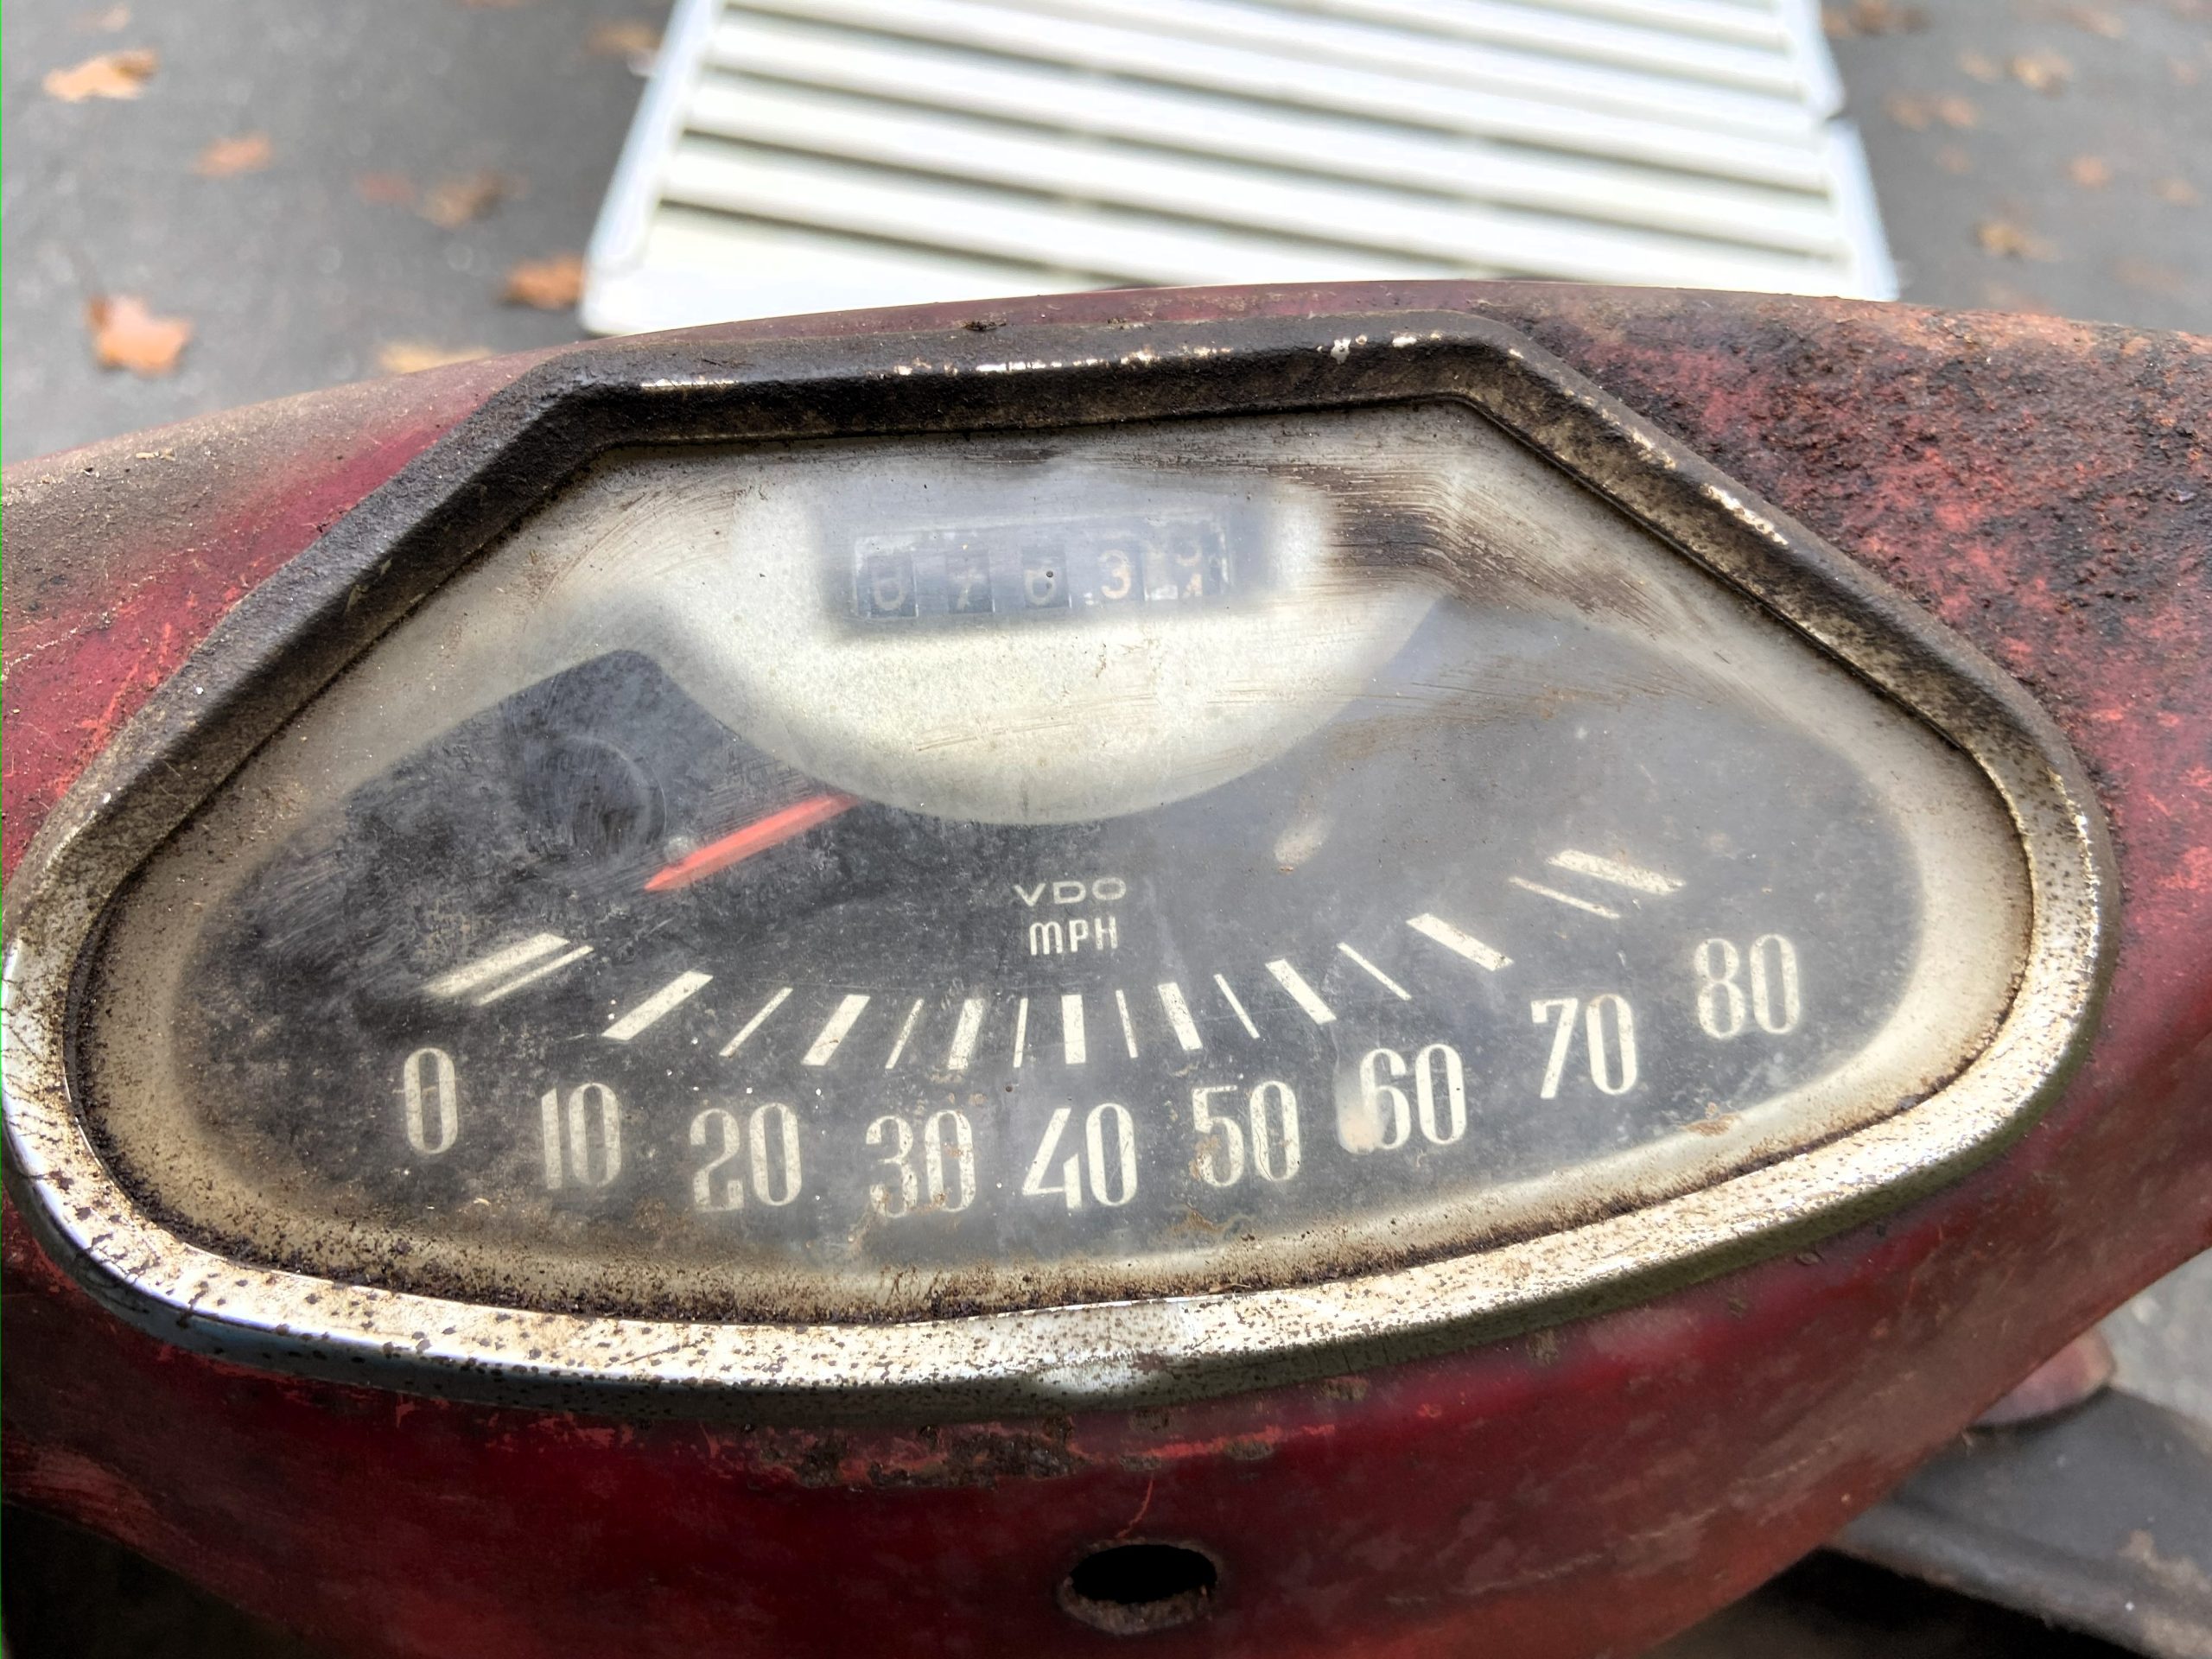 Heinkel Speedometer